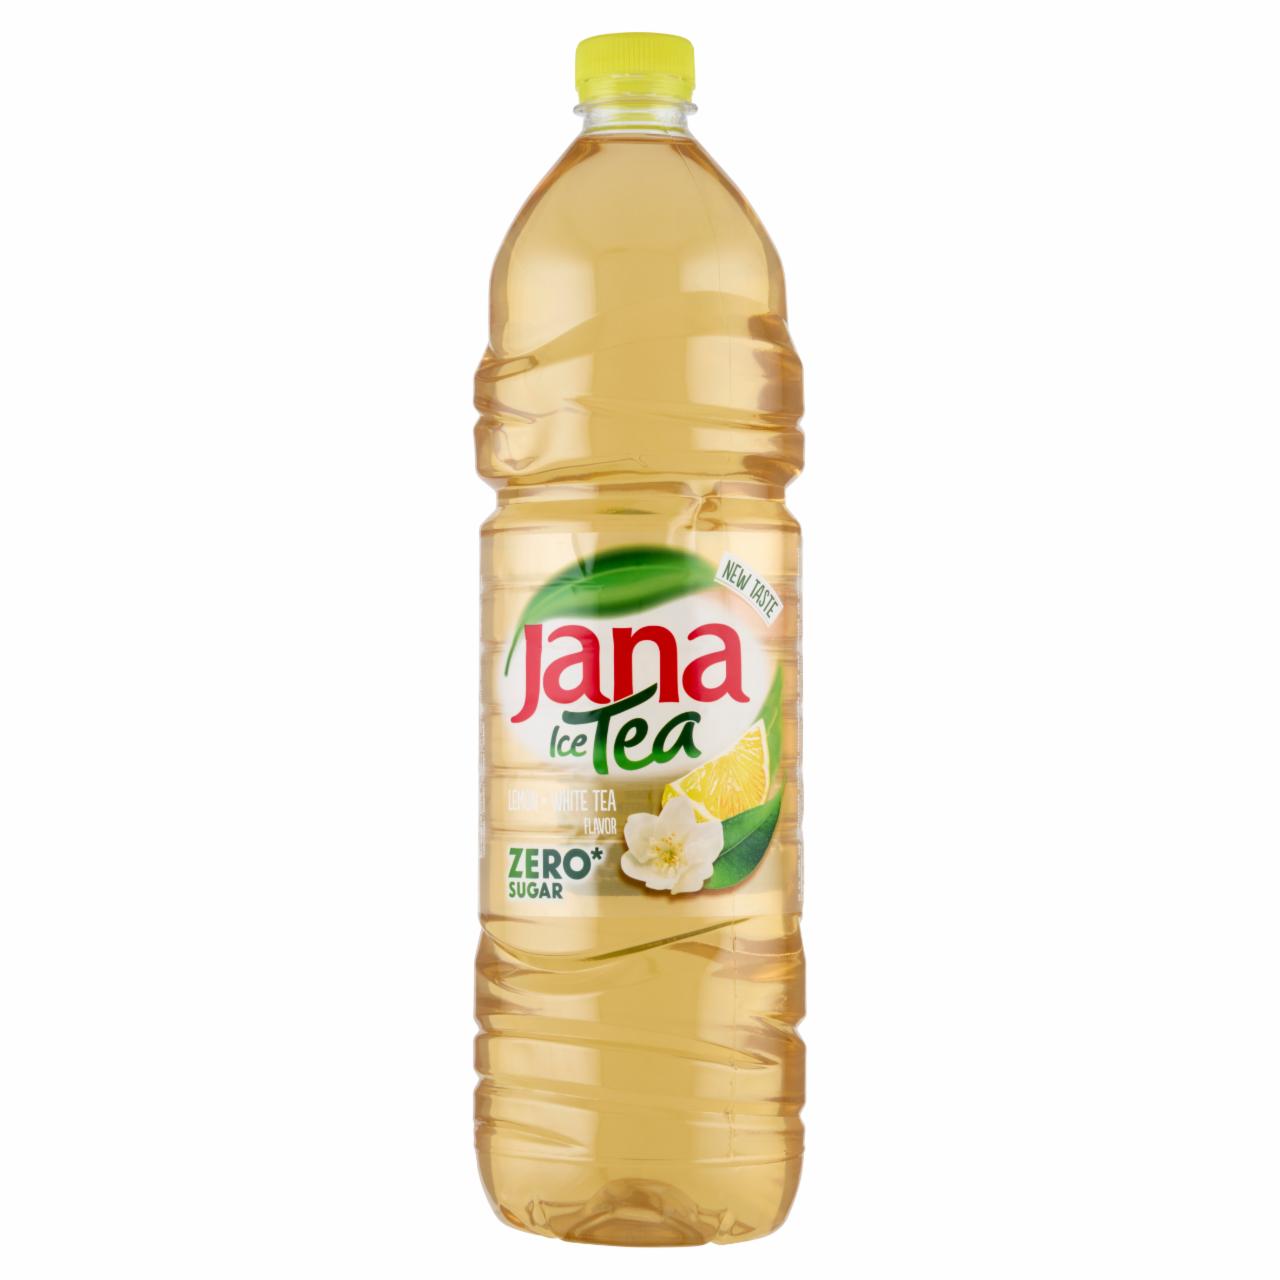 Képek - Jana Ice Tea energiamentes, szénsavmentes üdítőital citrom és a fehér tea ízével 6 x 1,5 l